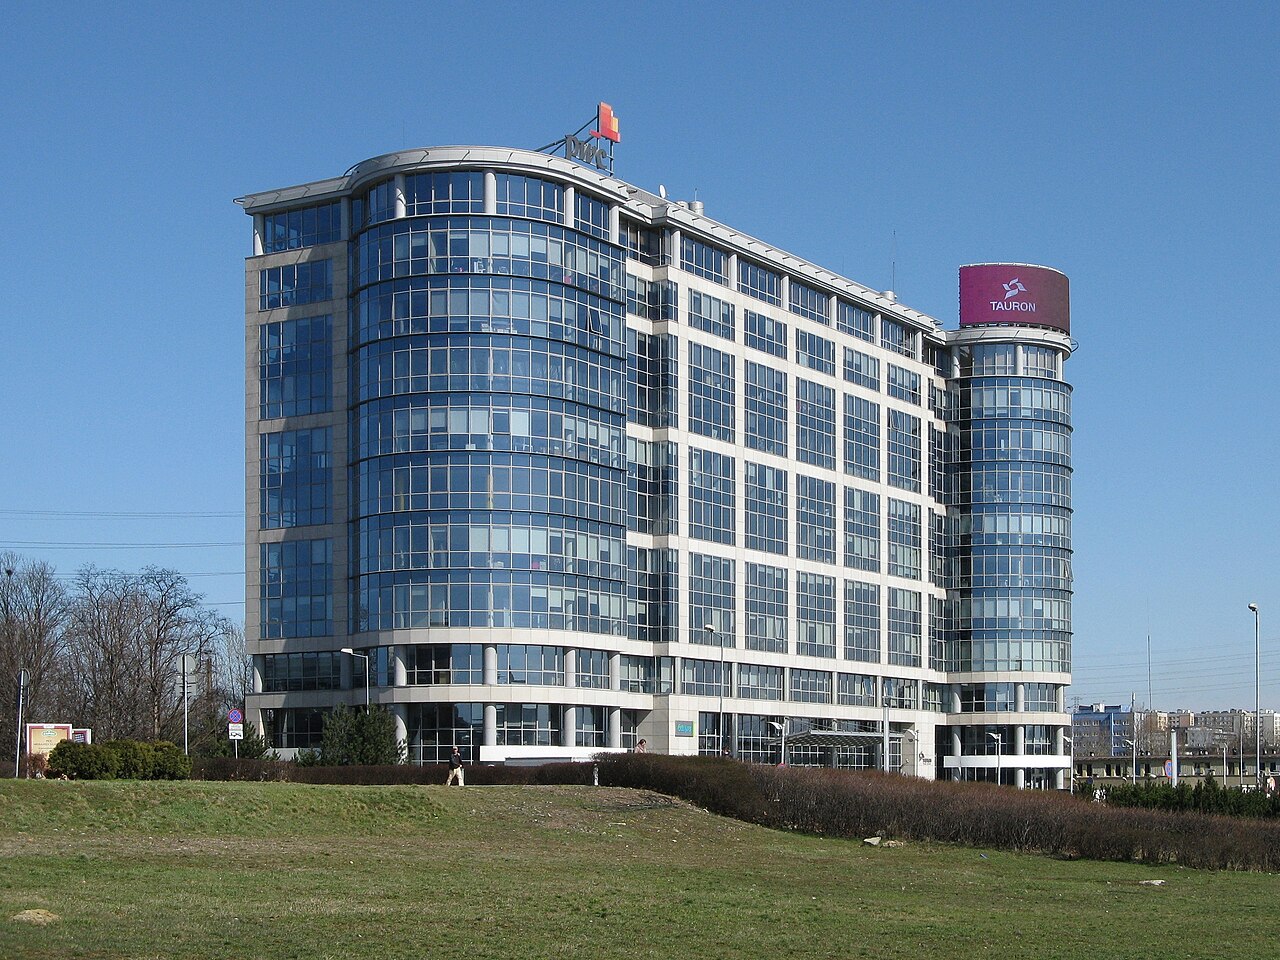 Widok na nowoczesny budynek biurowy z szybami odblaskowymi i zaokrąglonymi narożnikami pod błękitnym niebem. Na dachu budynek ma umieszczony napis "TAURON".